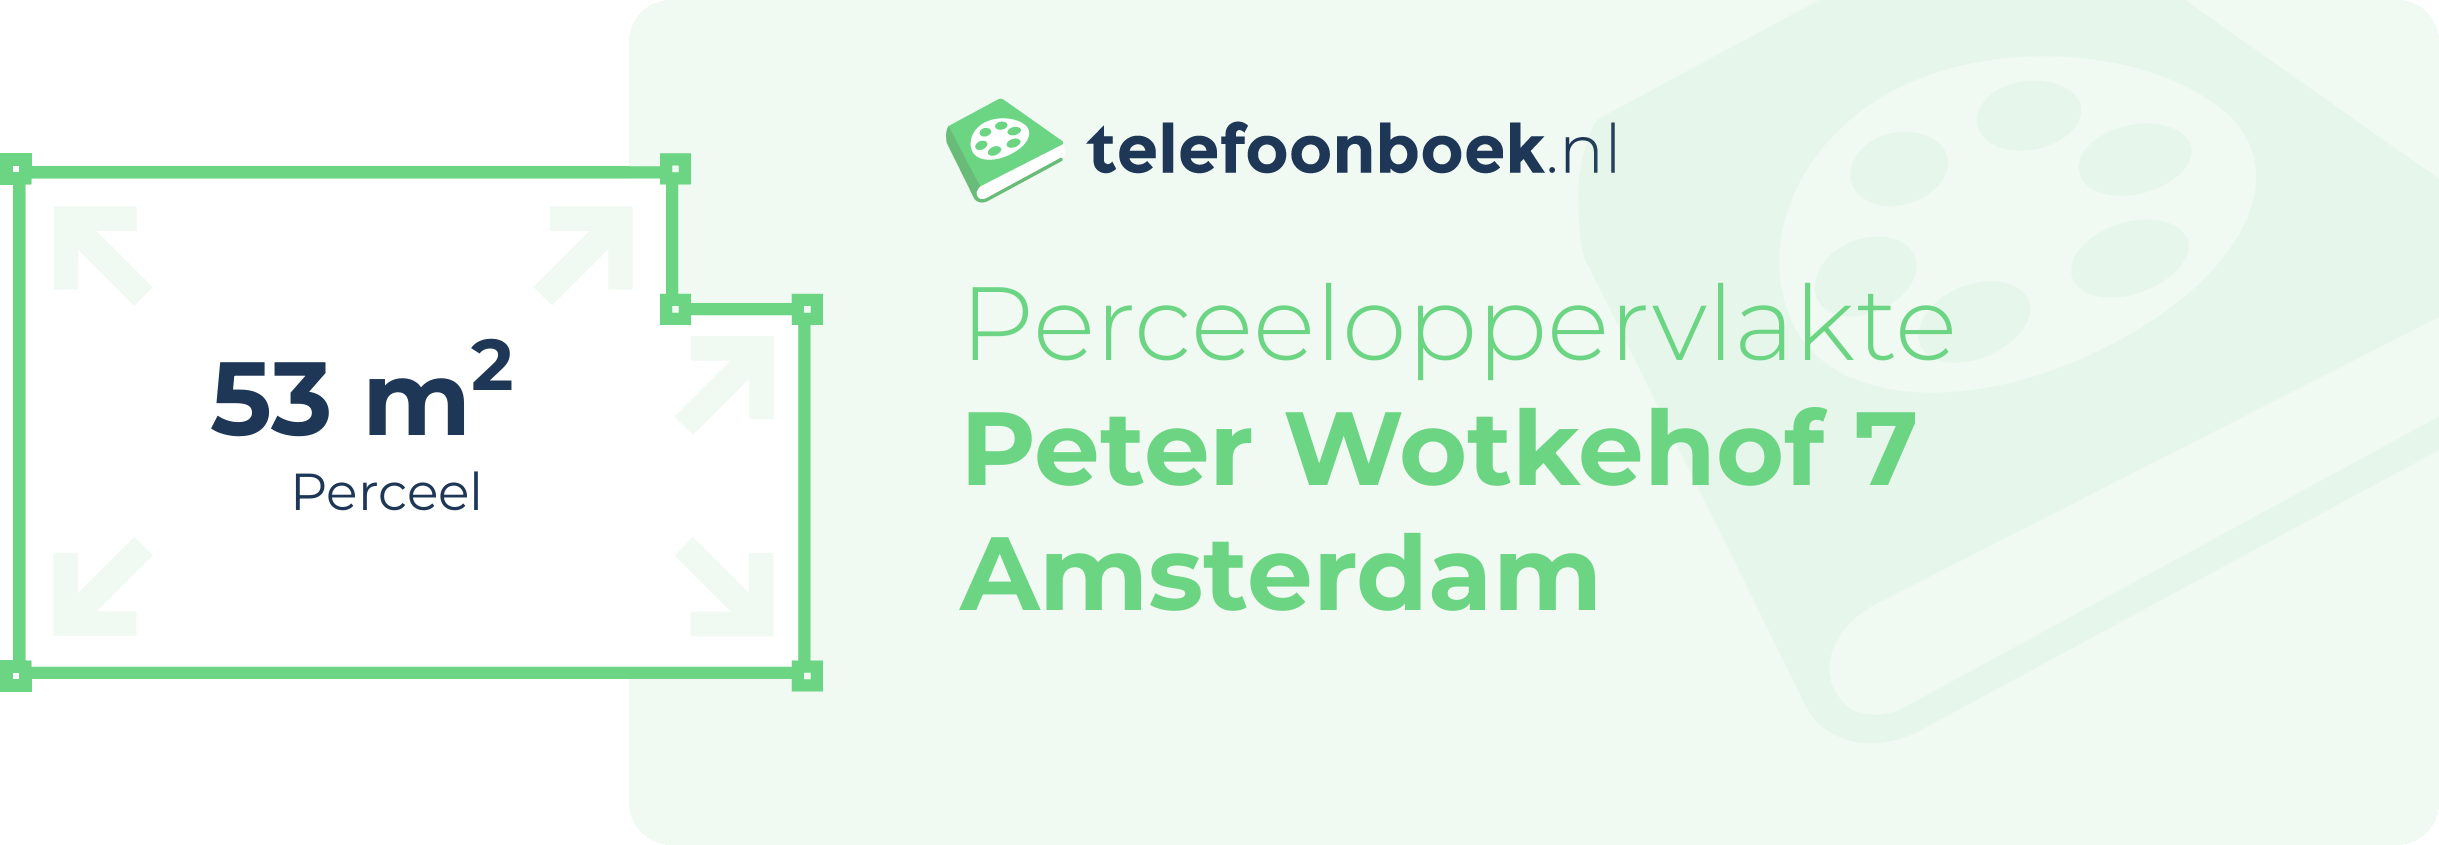 Perceeloppervlakte Peter Wotkehof 7 Amsterdam